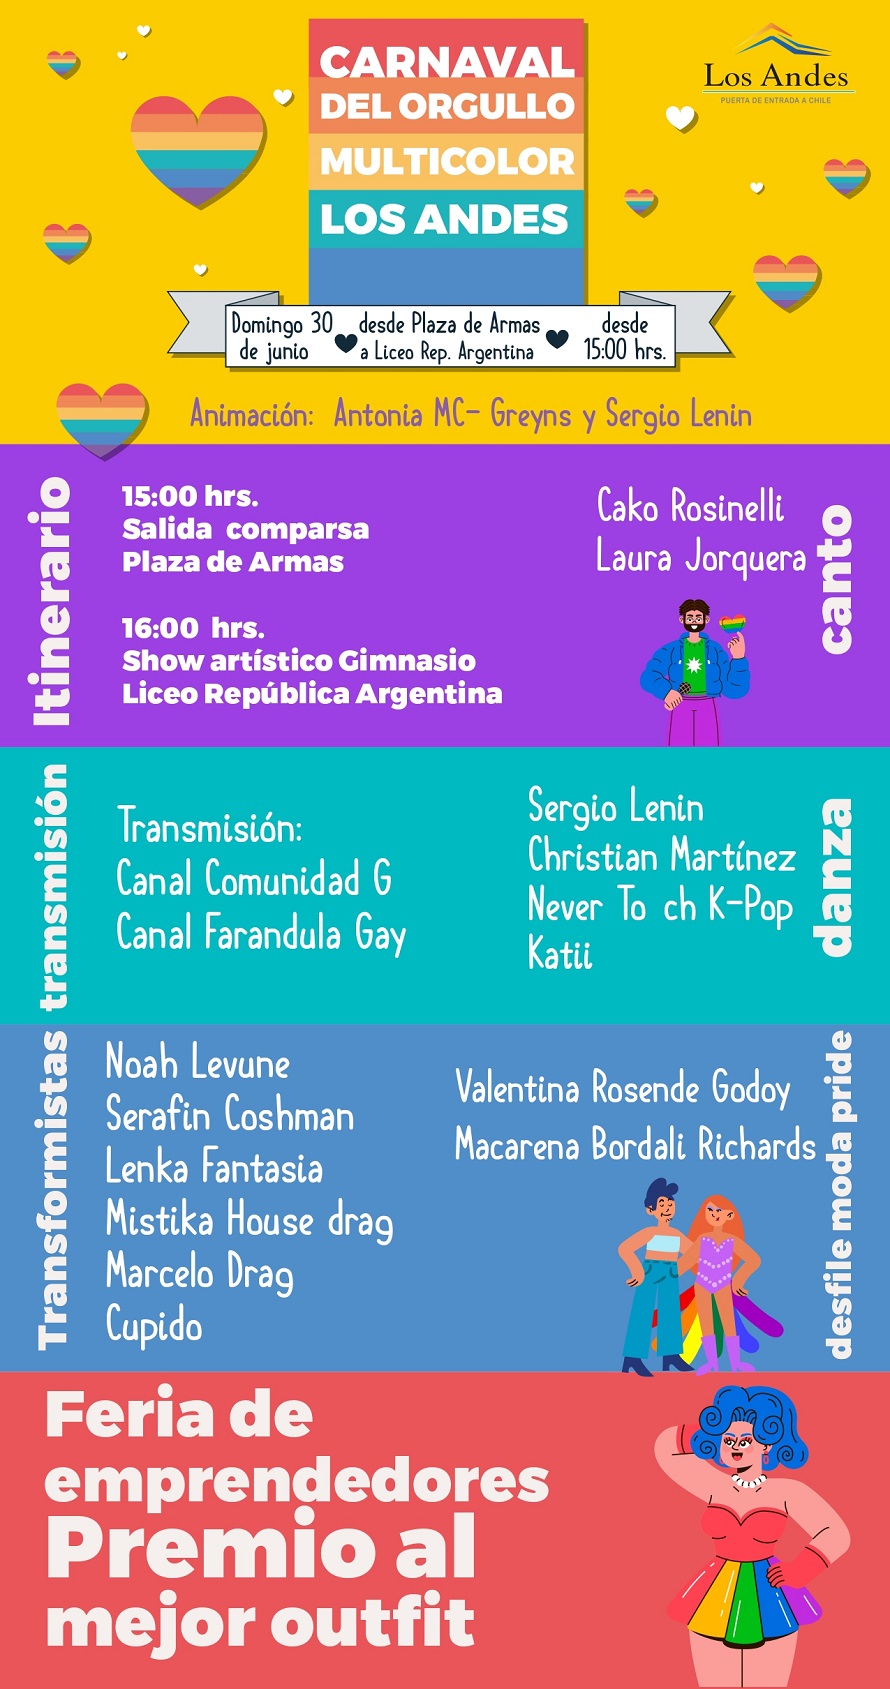 LOS ANDES: Los Andes hará un Carnaval del Orgullo multicolor